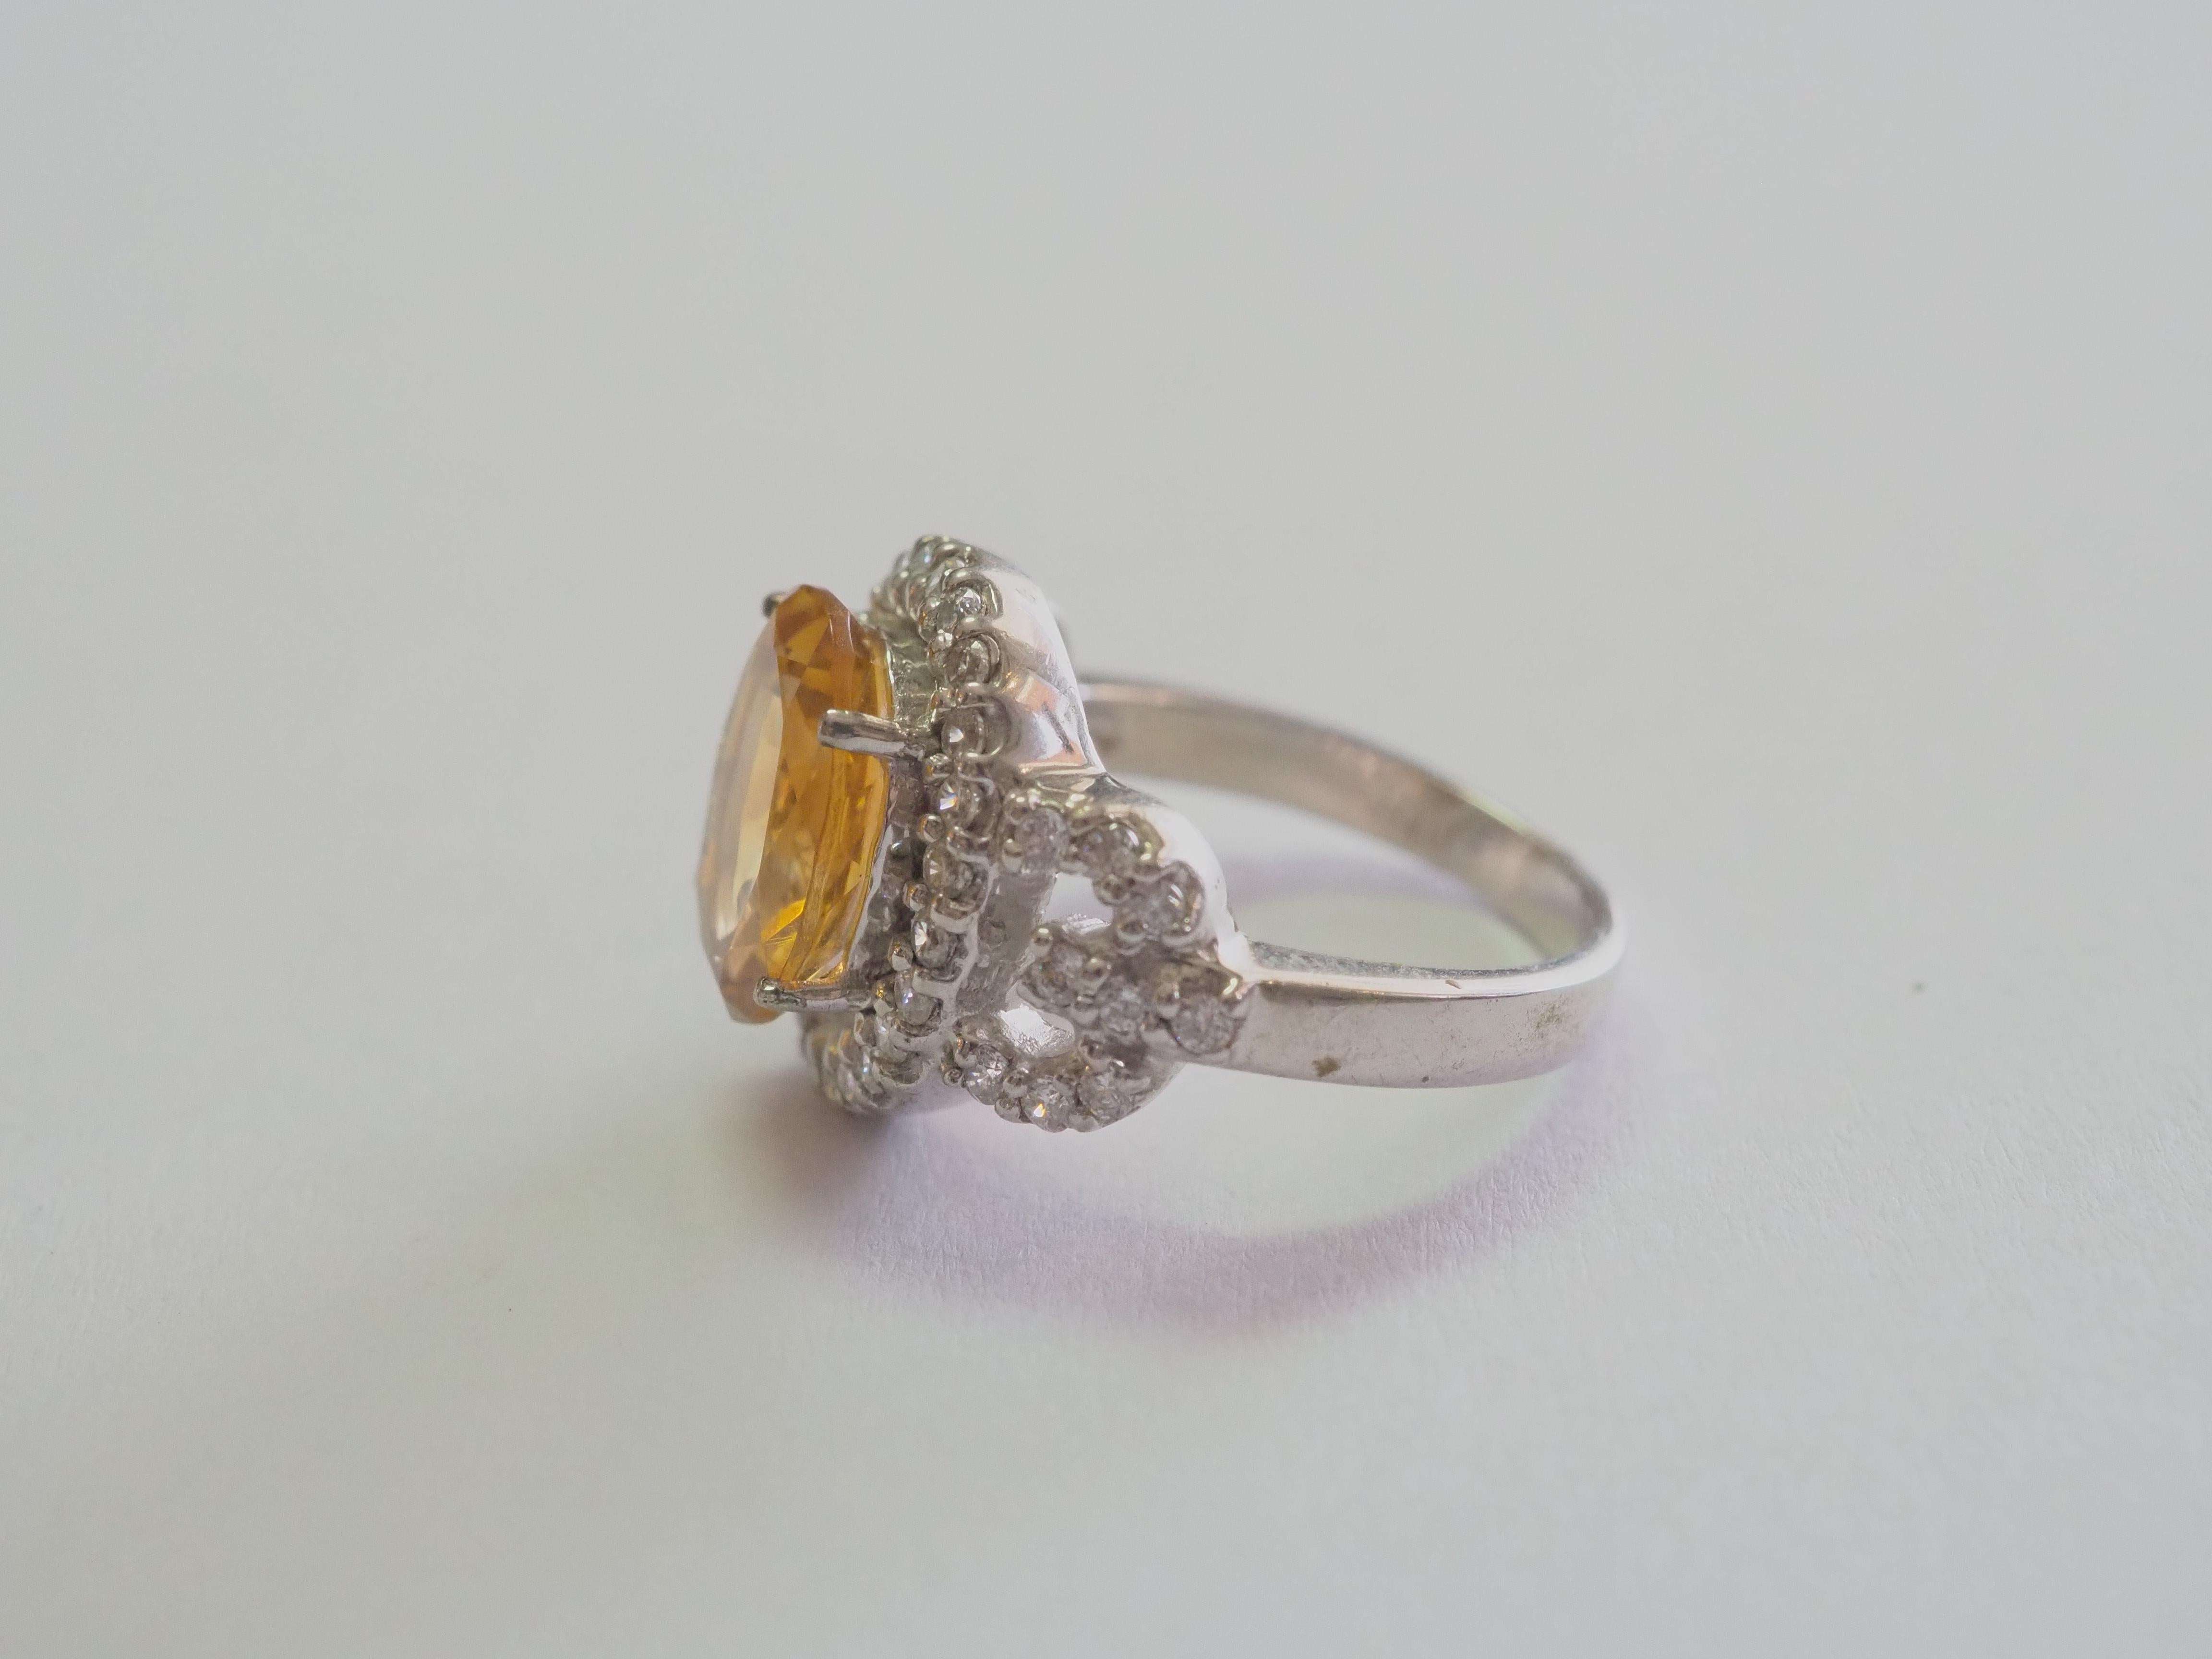 Dieser Ring ist ein schöner und eleganter Cocktailring aus massivem Sterlingsilber. Der Ring ist mit einem ovalen Citrin verziert, der in der Mitte gefasst ist. Die strahlend weißen Steine, die den gelben Edelstein umgeben, sind Zirkonia. Der Citrin